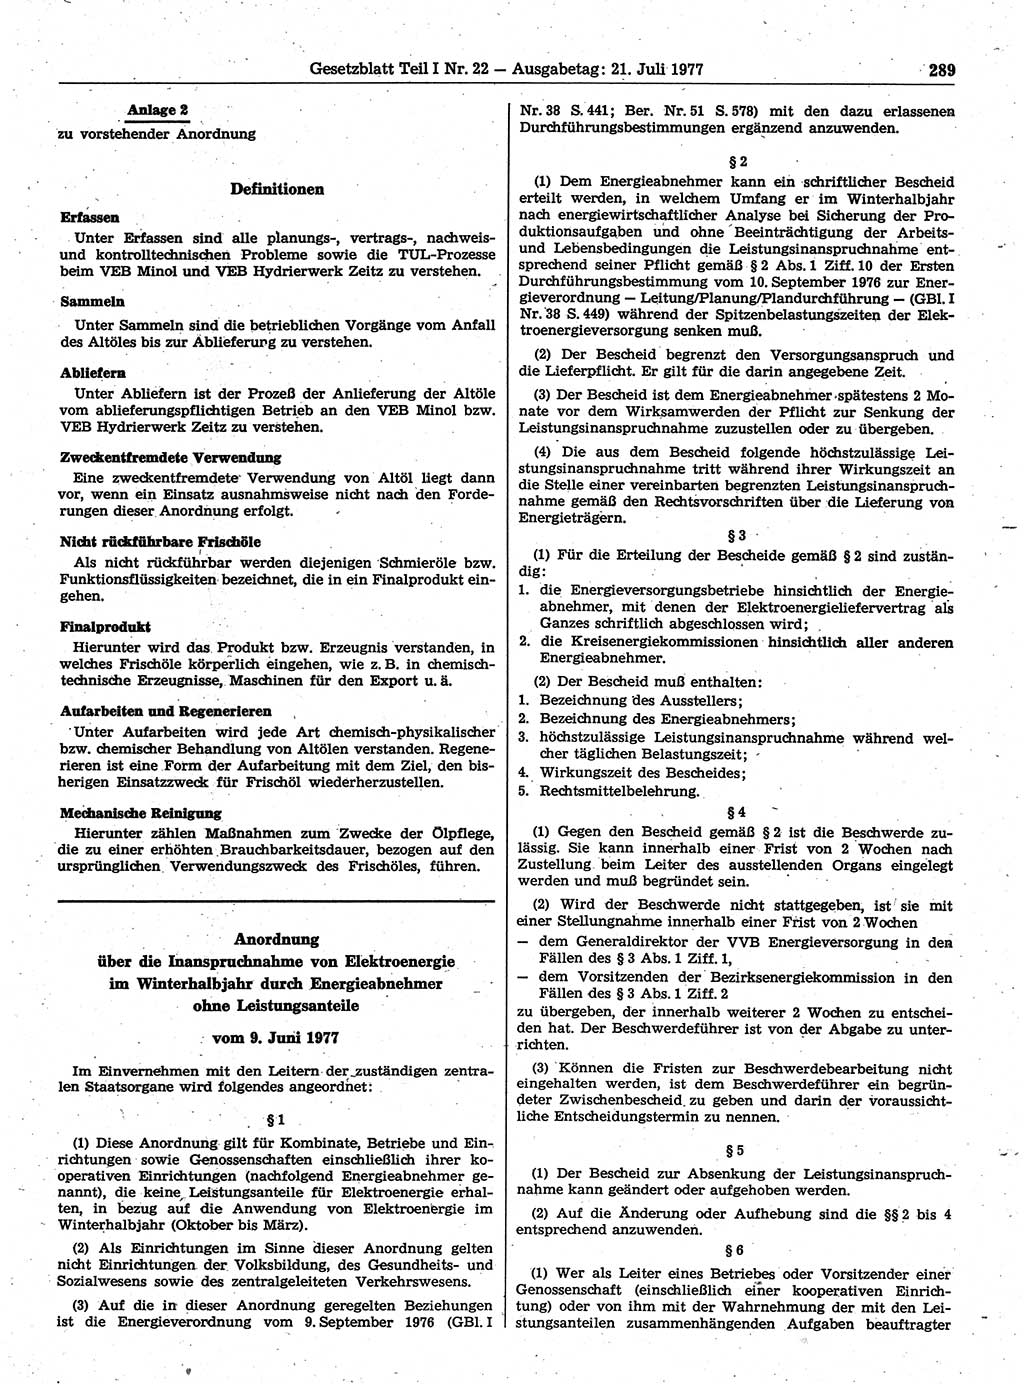 Gesetzblatt (GBl.) der Deutschen Demokratischen Republik (DDR) Teil Ⅰ 1977, Seite 289 (GBl. DDR Ⅰ 1977, S. 289)